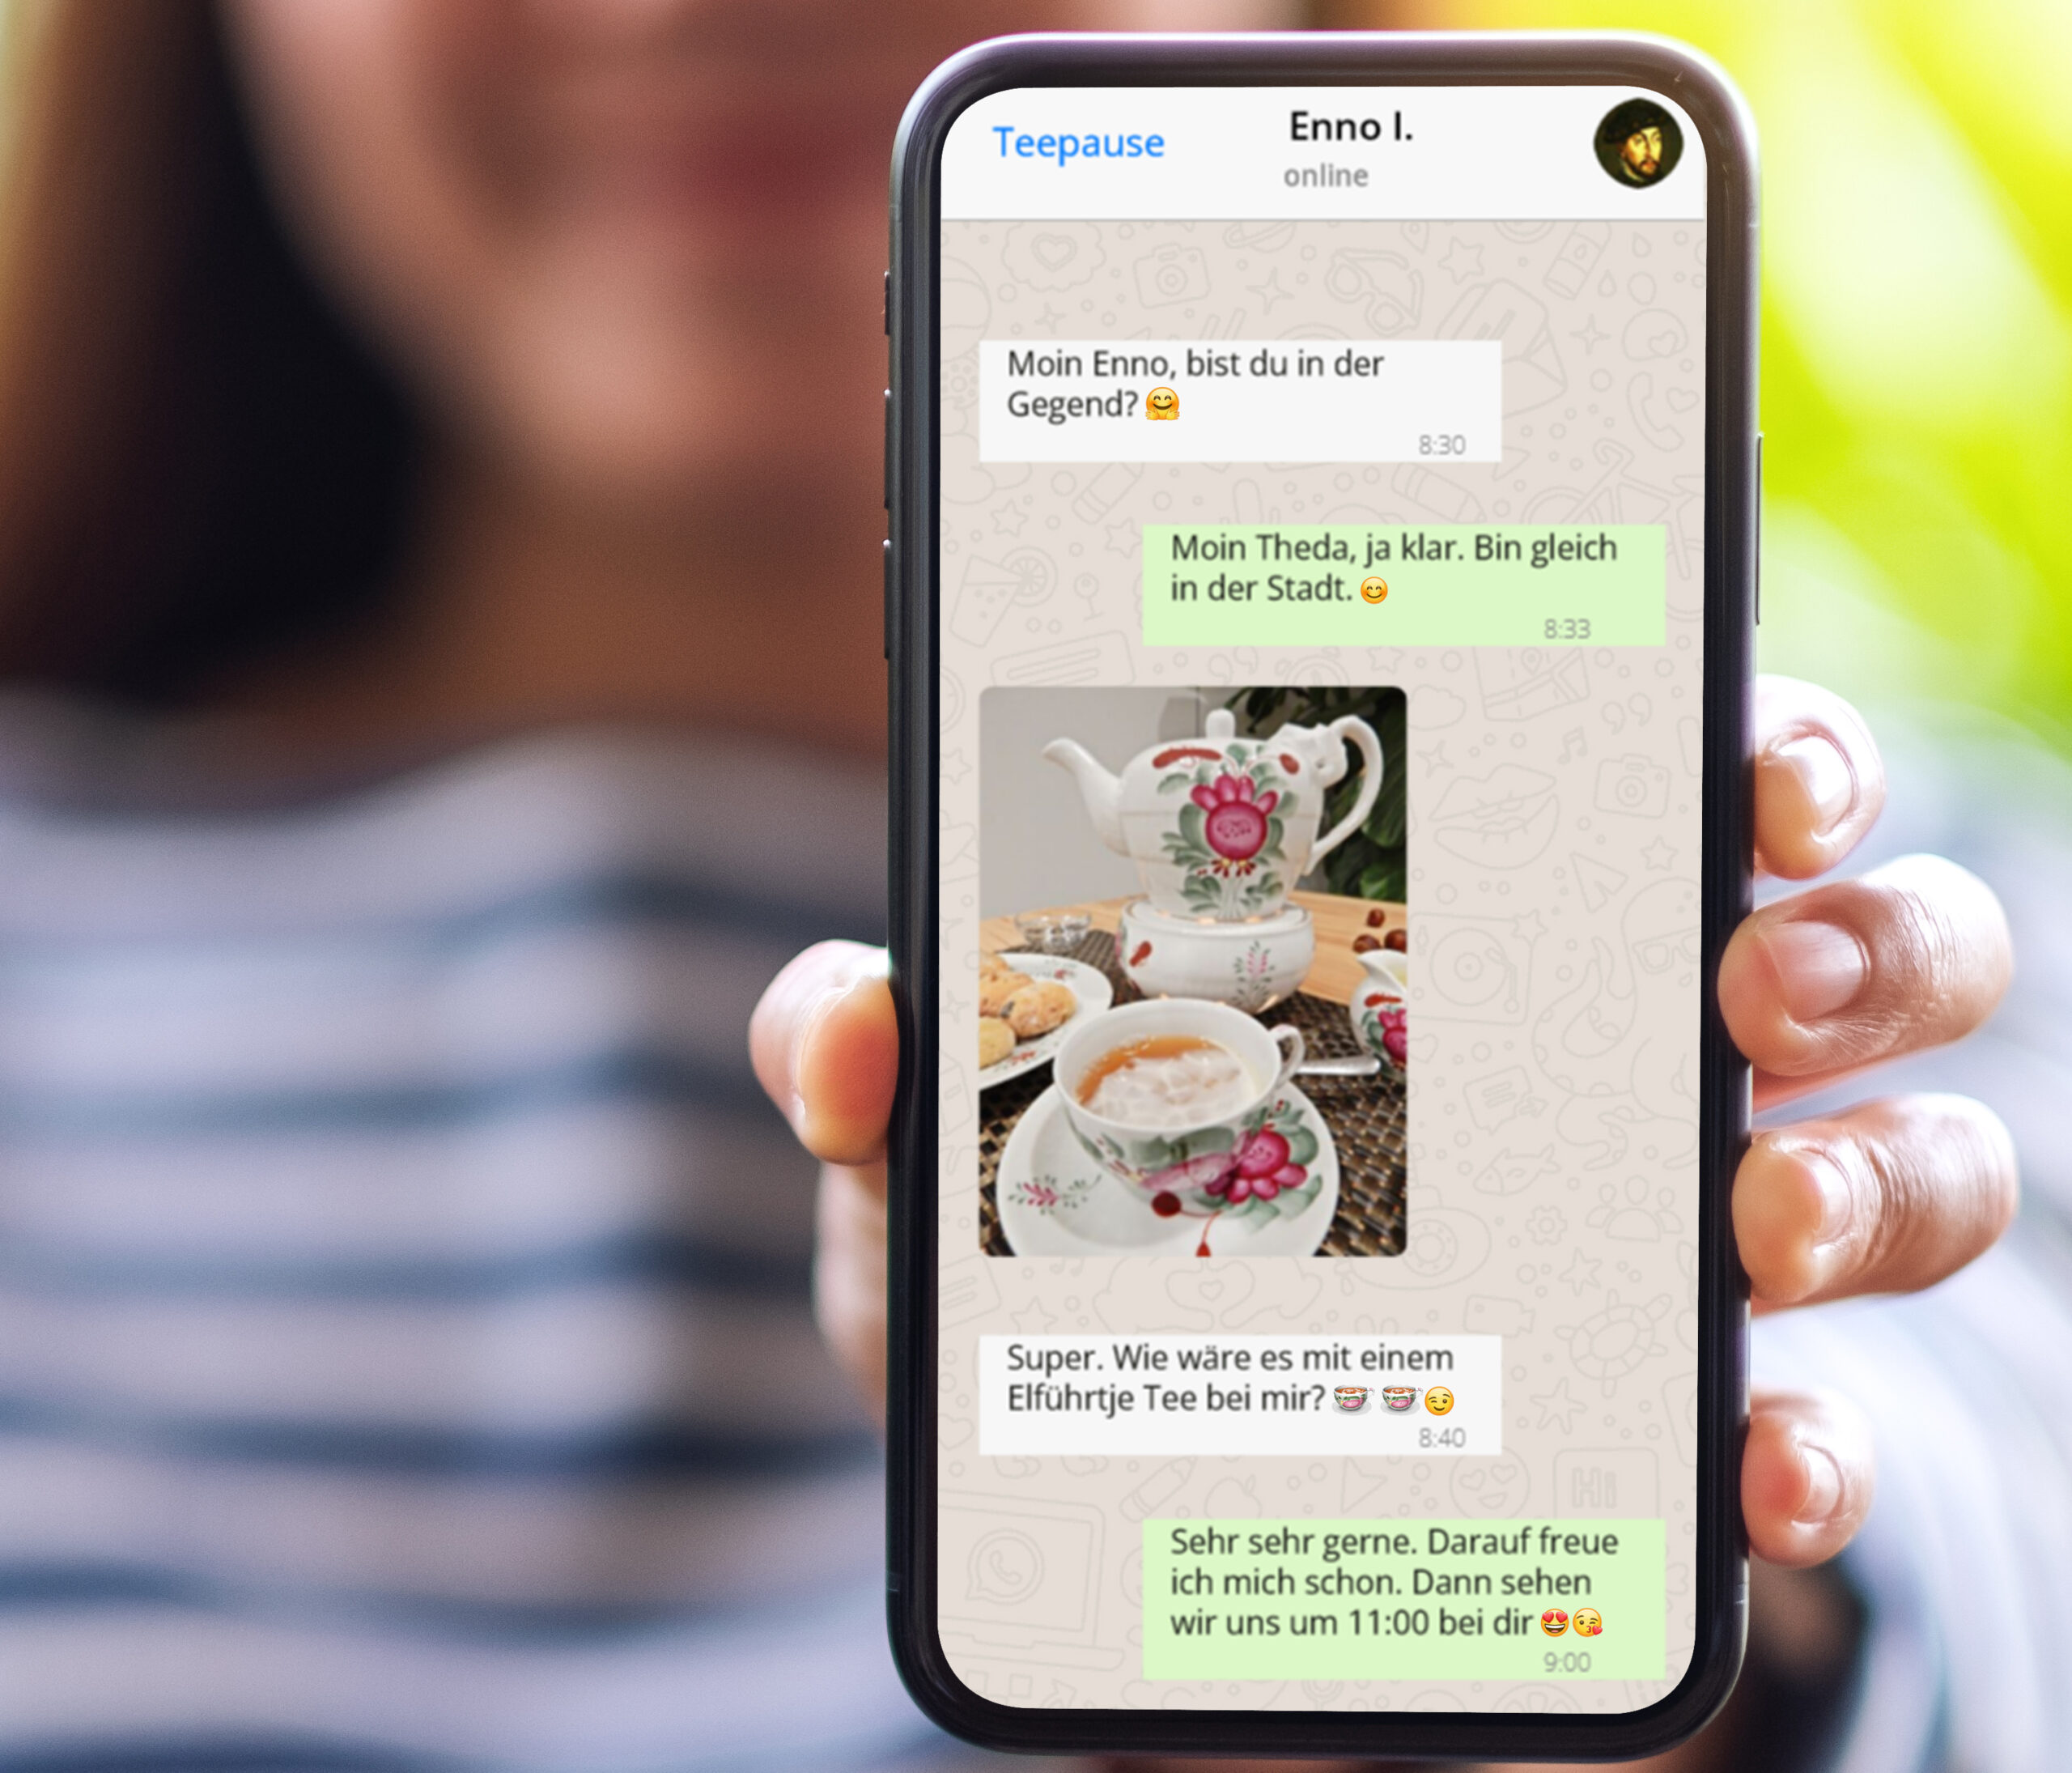 Das Tee-Emoji in einem WhatsApp-Verlauf